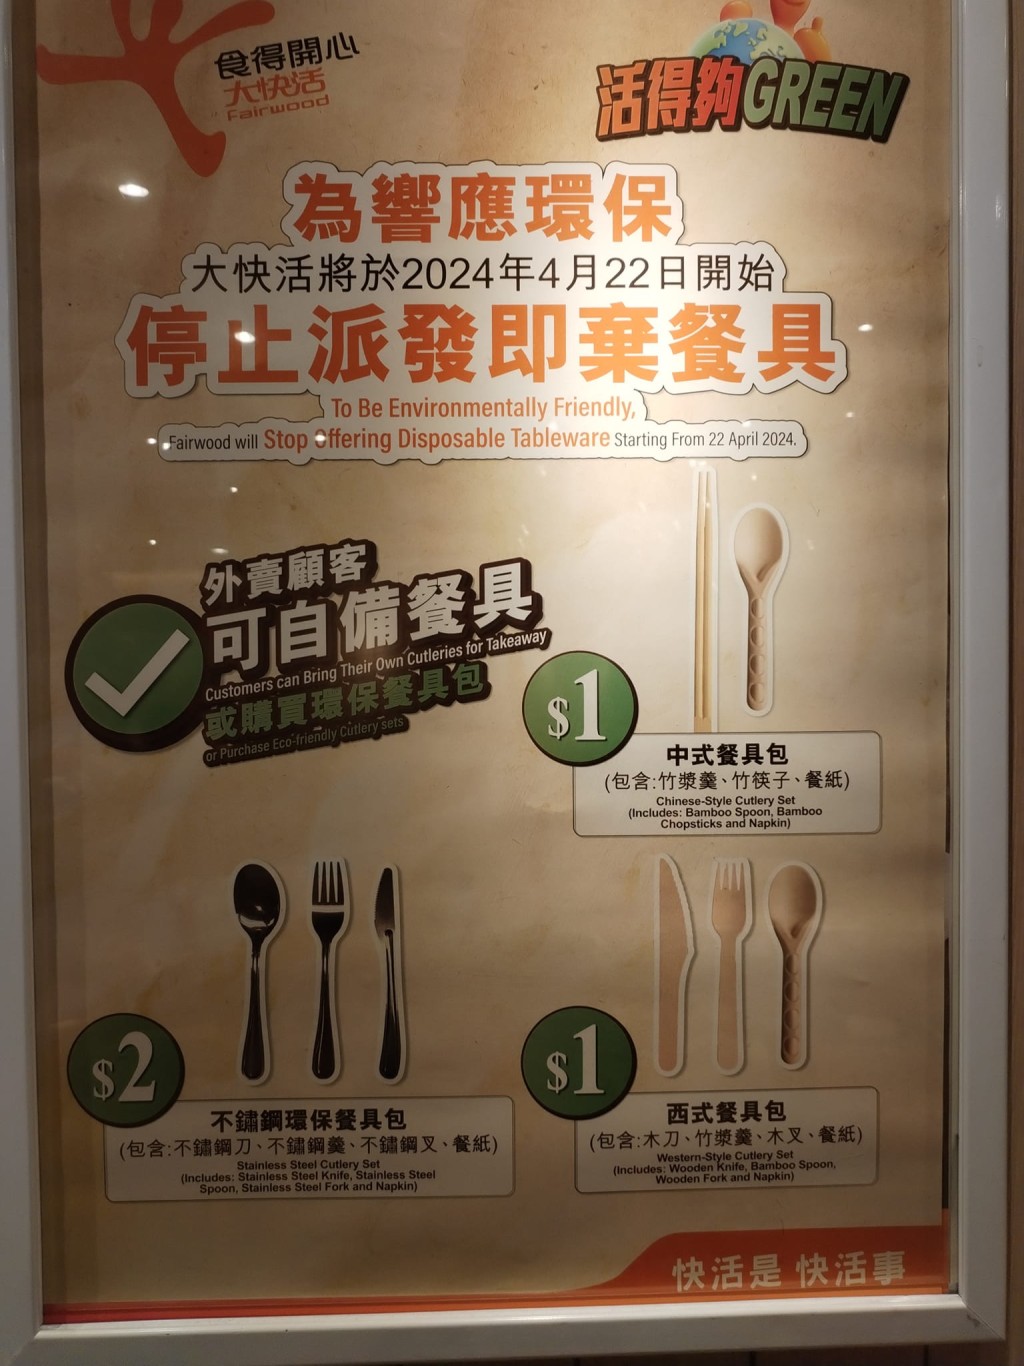 連鎖快餐店大快活宣布4月22日起停派塑膠即棄餐具，外賣顧客可自備餐具，又或支付1至2元加購餐具包。香港茶餐廳及美食關注組FB